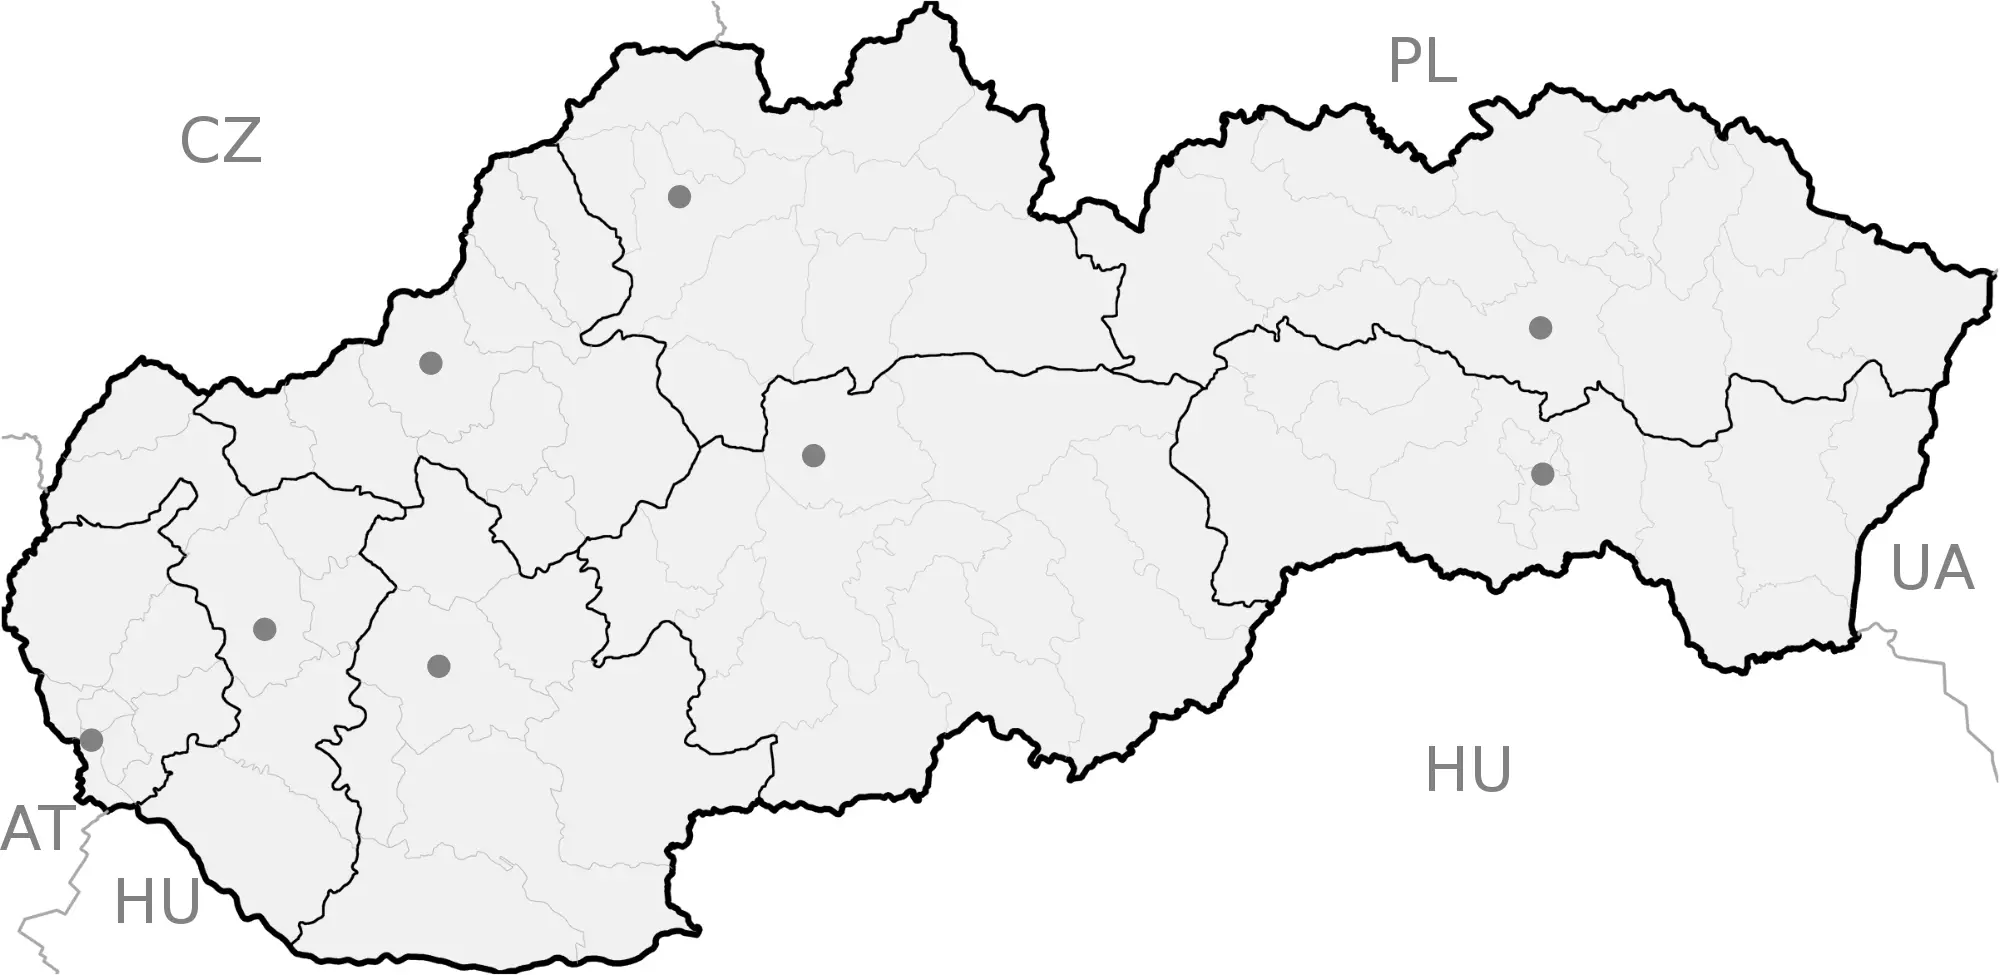 Slovakia Regions Map Blank